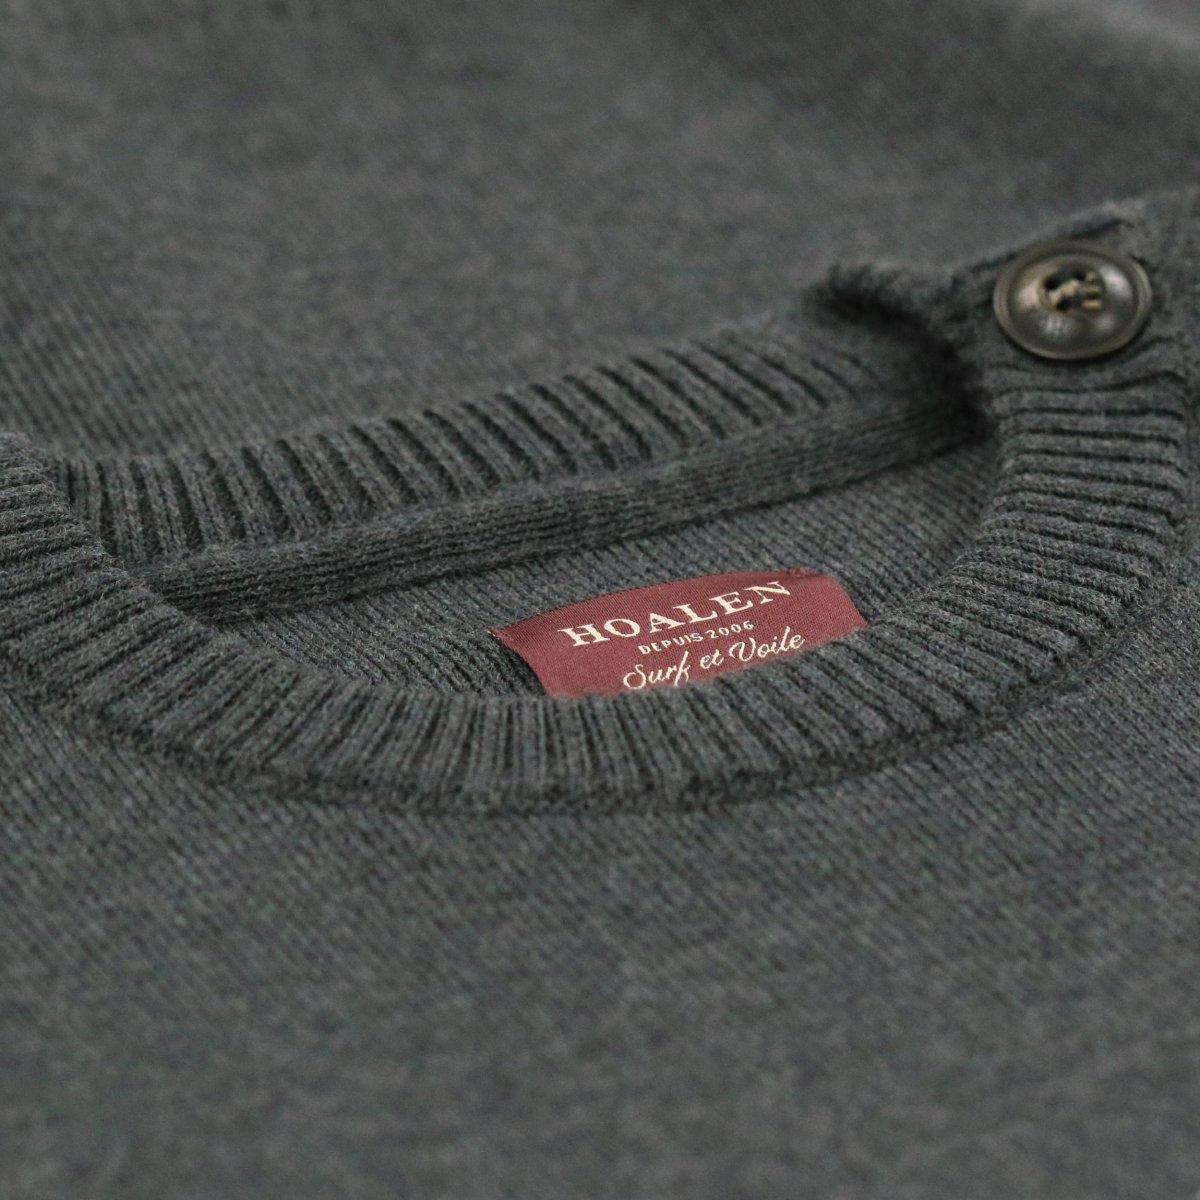 Merino wool Sweater